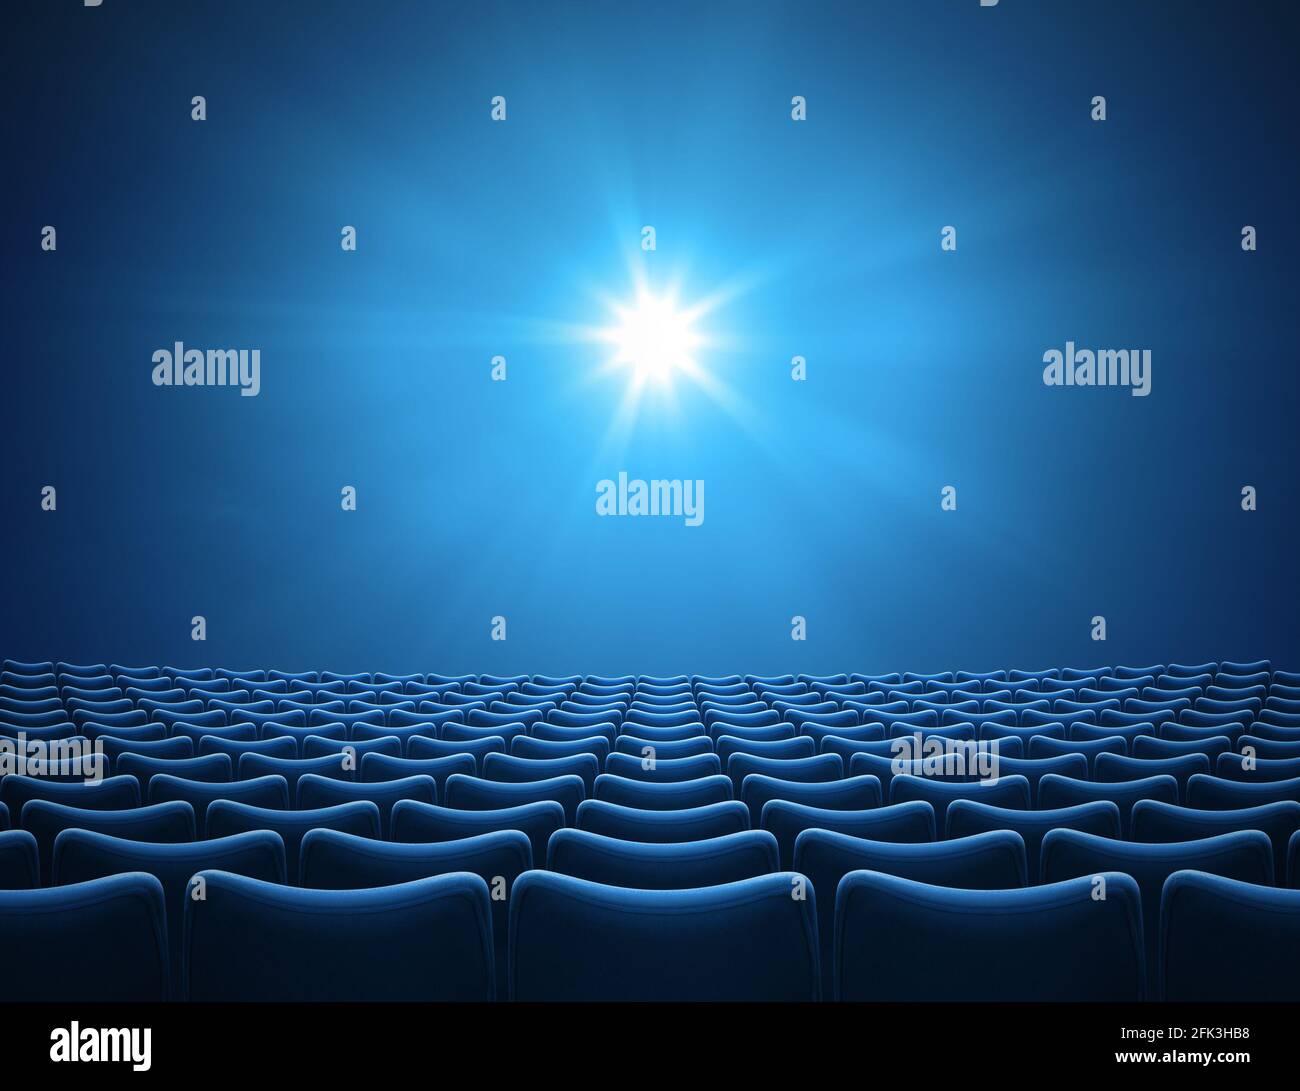 Auditorio de cine azul vacío con ilustración de 3D rayos brillantes Foto de stock